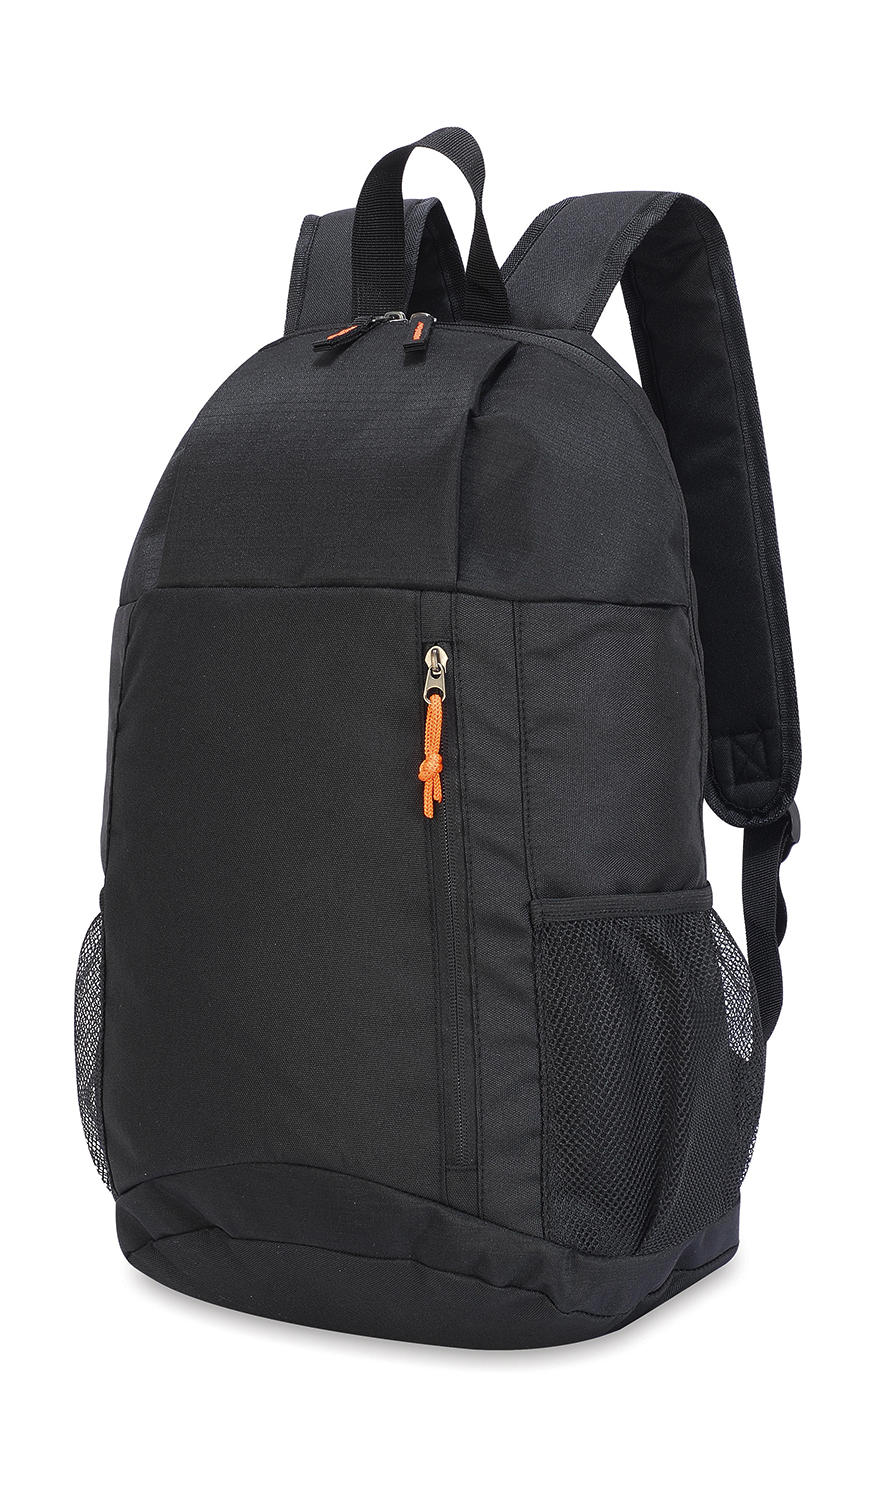 York Basic Backpack